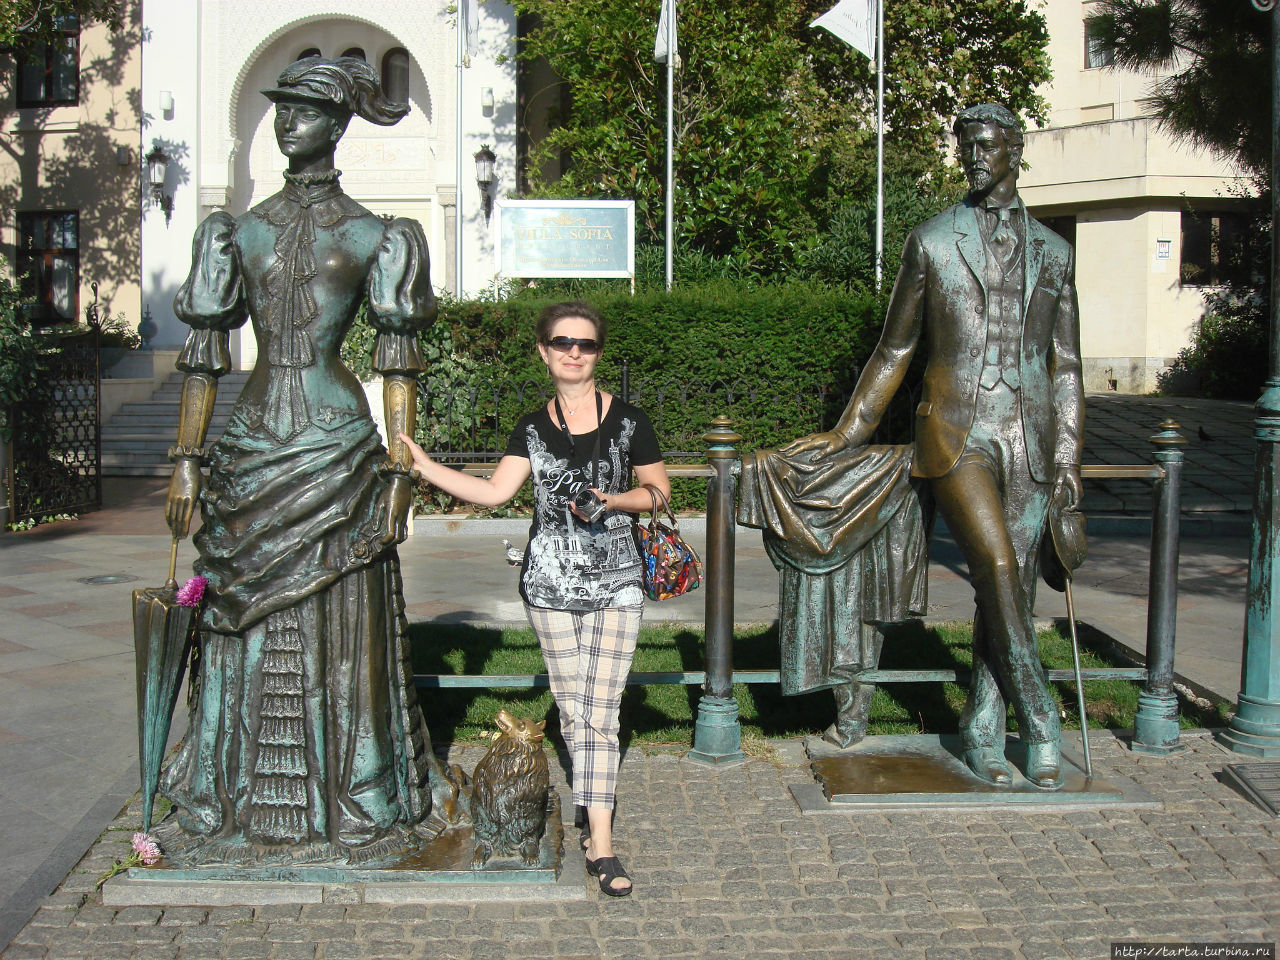 Вилла София прямо за скульптурной композицией Ялта, Россия